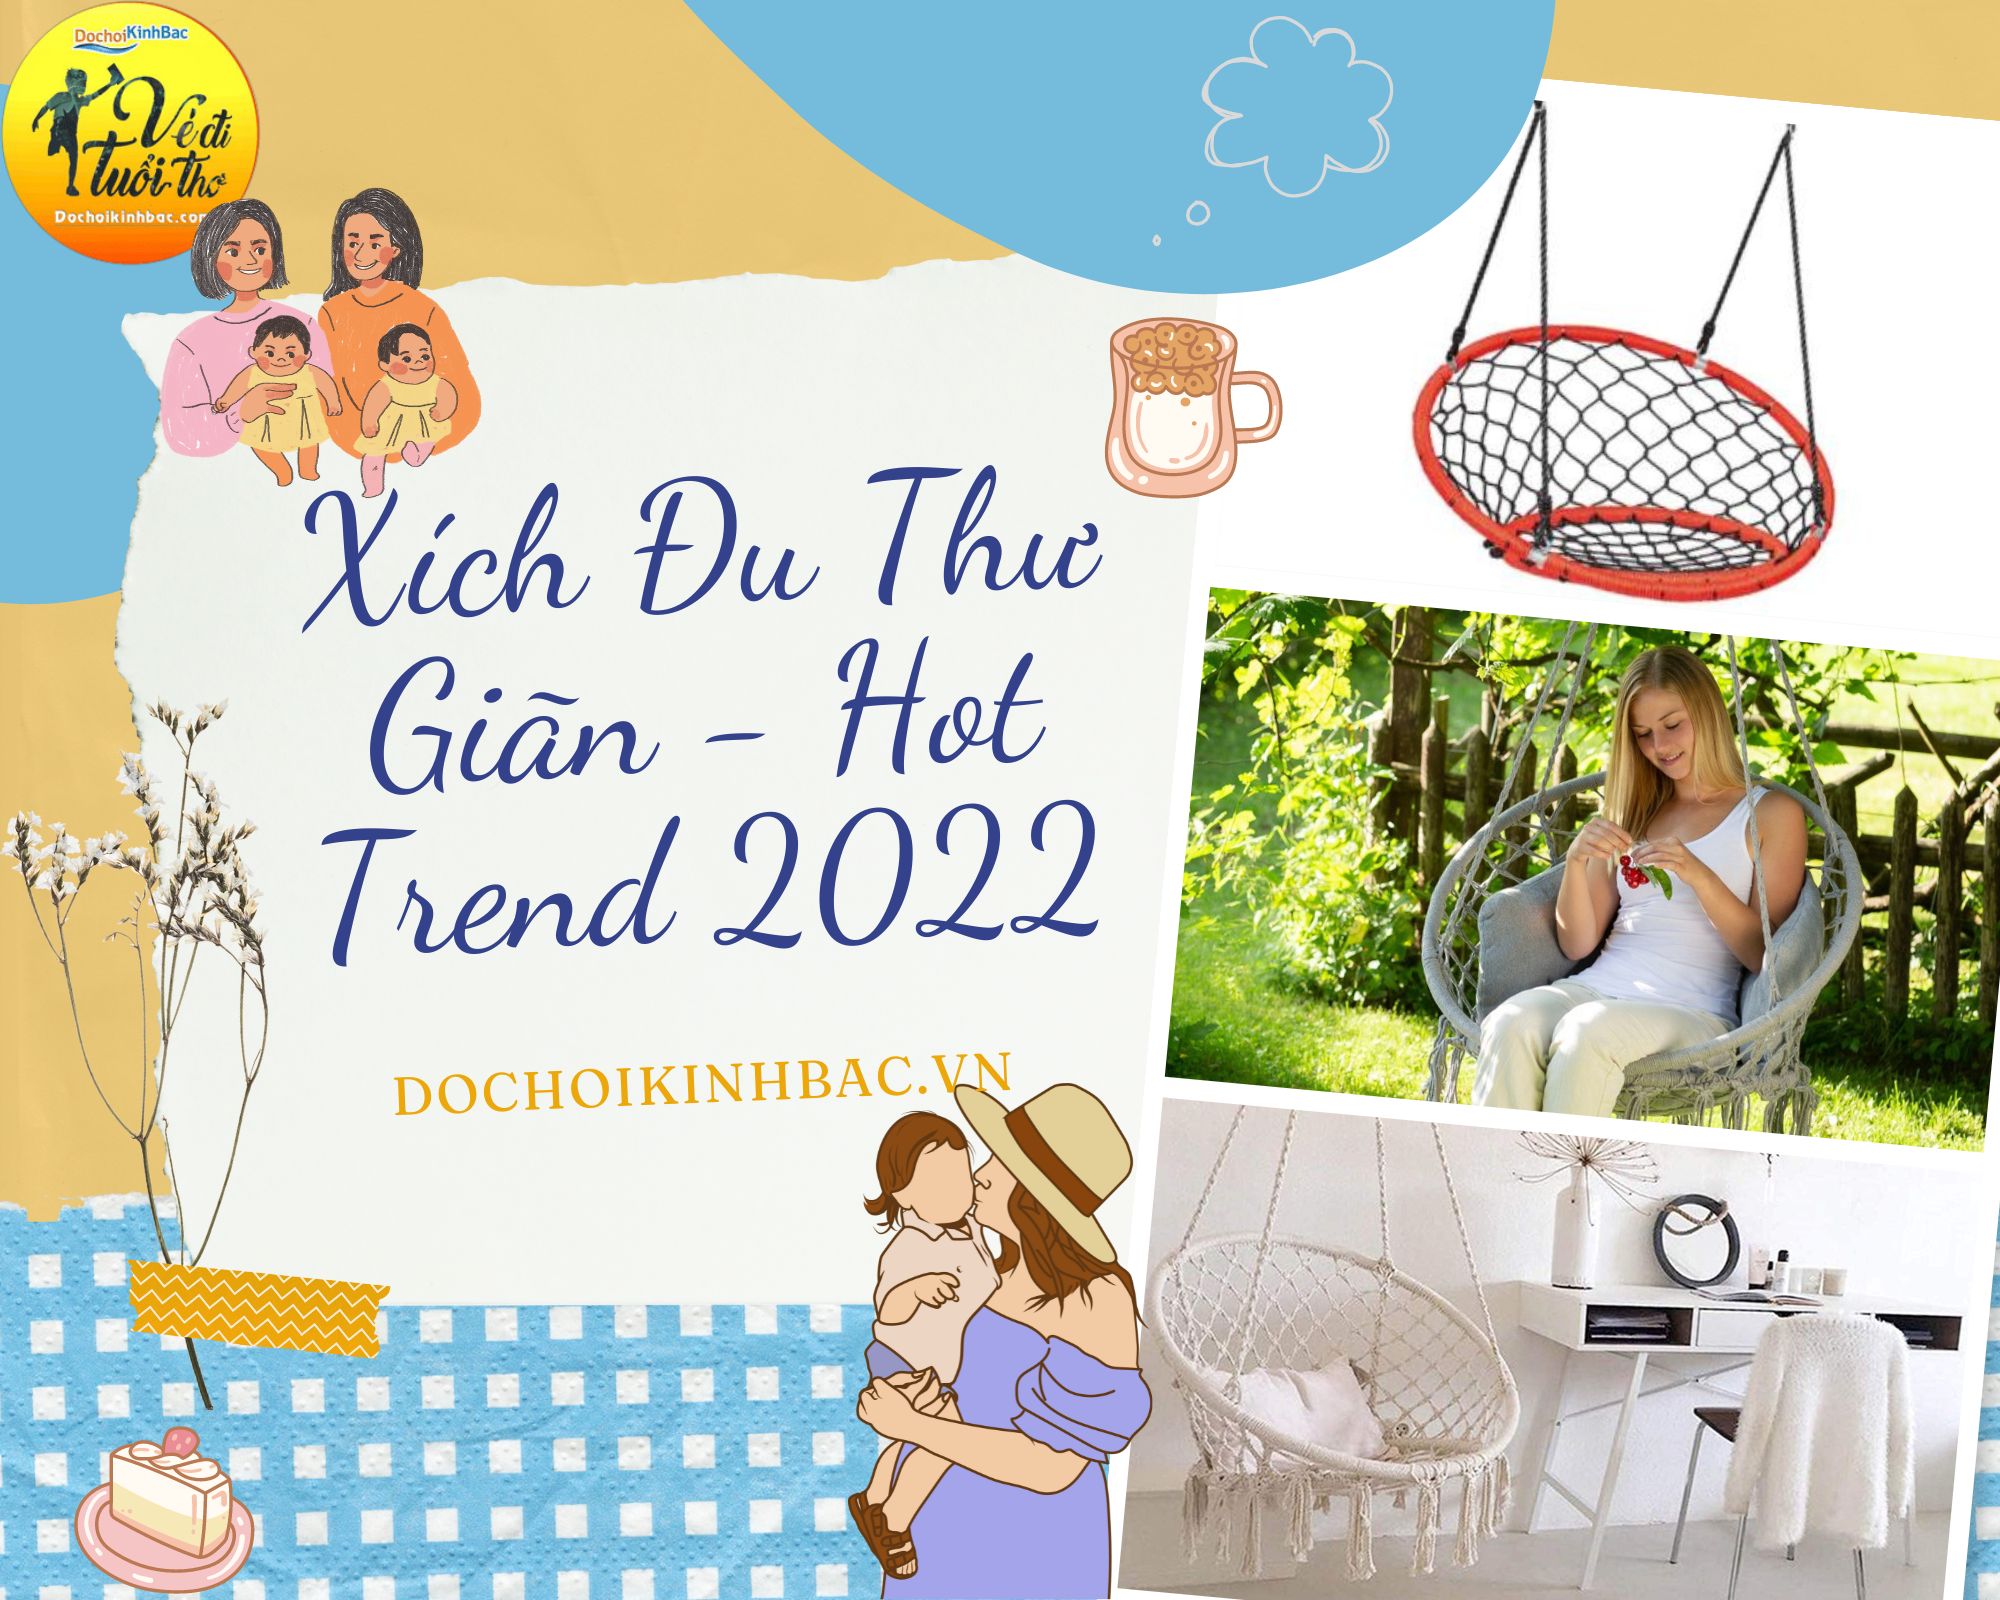 Xích đu thư giãn – lựa chọn bắt trend mới nhất 2022 tại Lùng Khấu Nhin, Mường Khương, Lào Cai